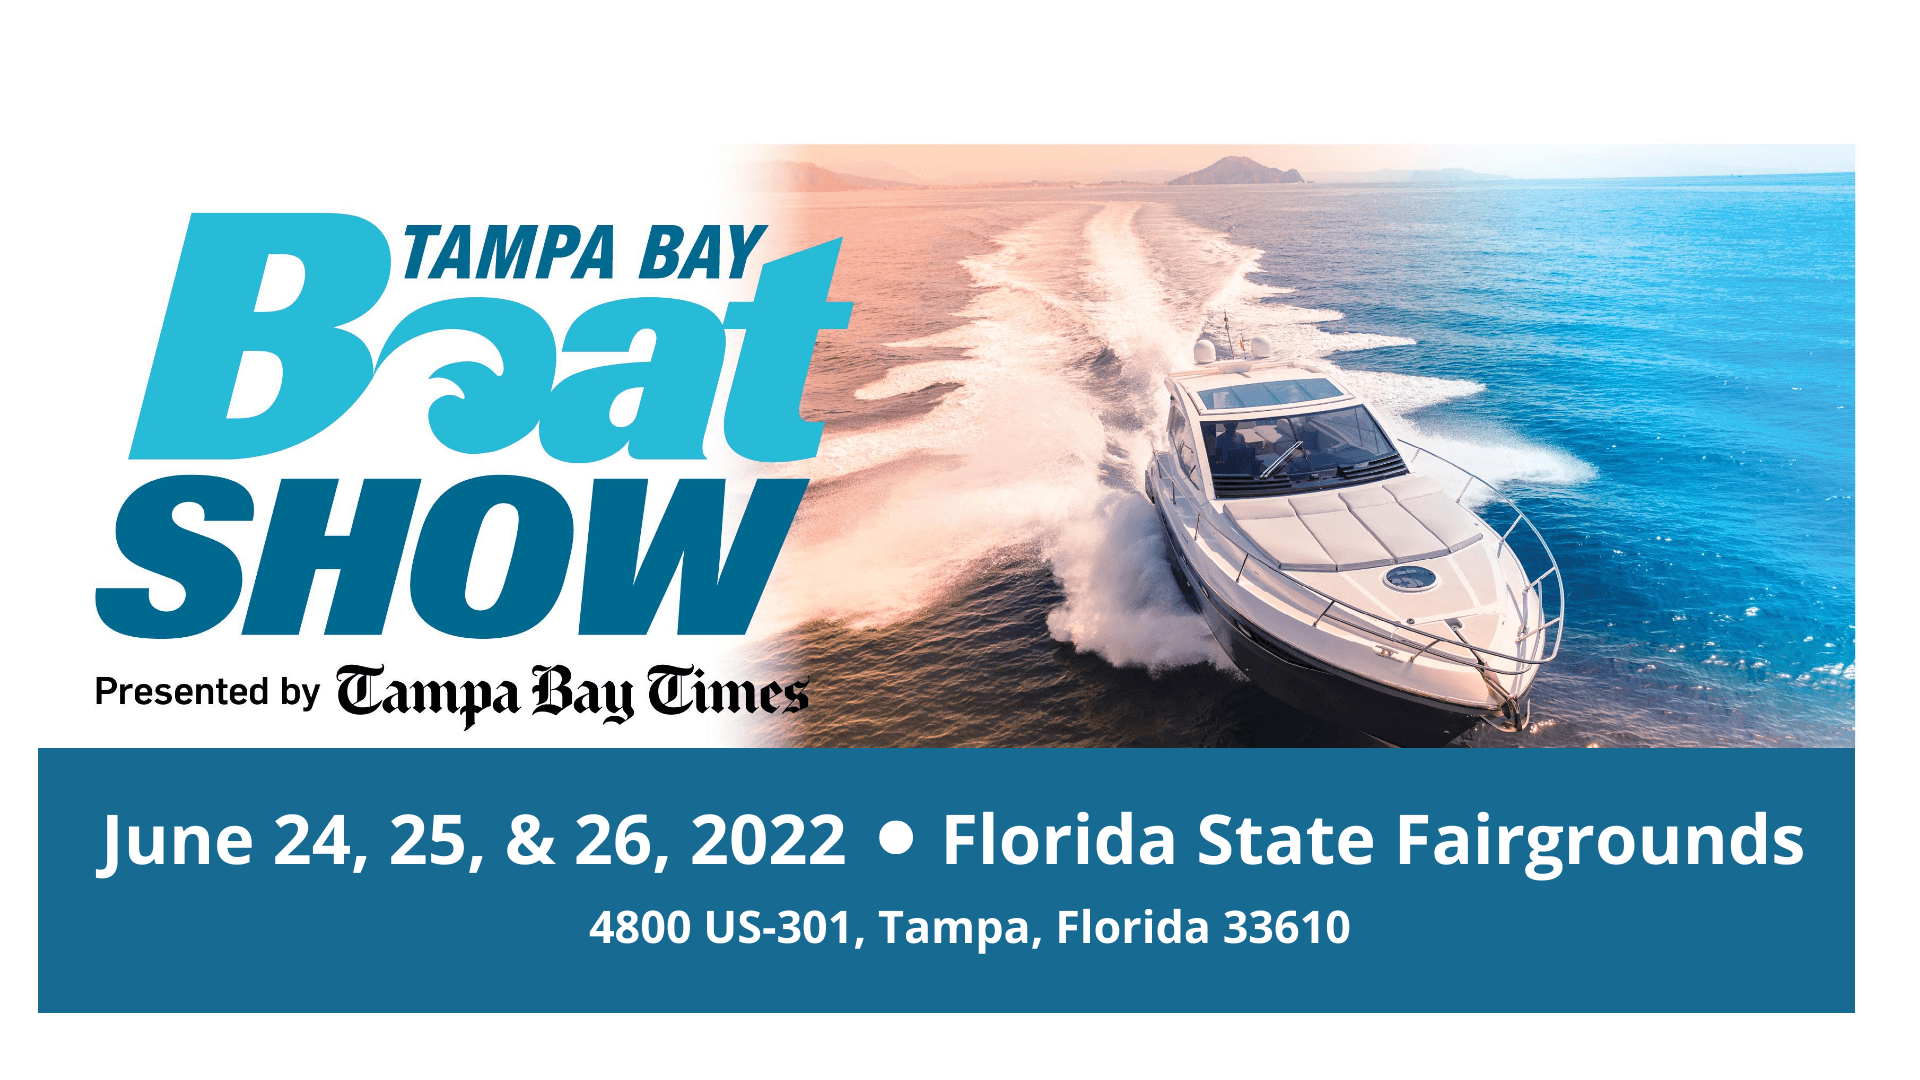 Tampa Bay Boat Show June 2022